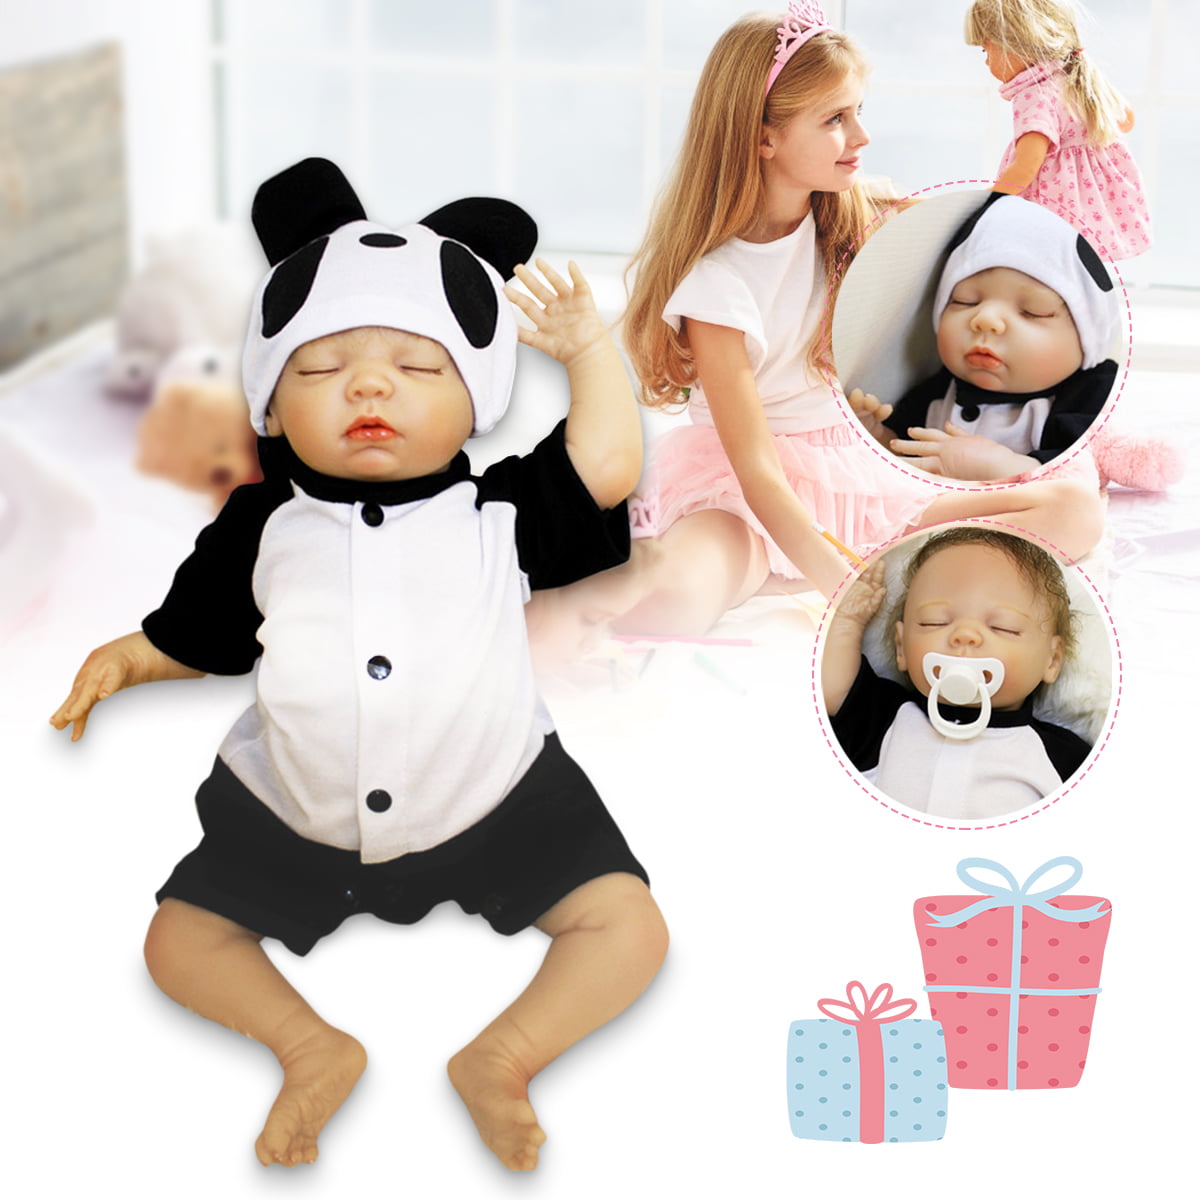 18'' Handmade Lifelike Baby Boy Doll Silicone Vinyl Reborn Newborn Dolls+Clothes